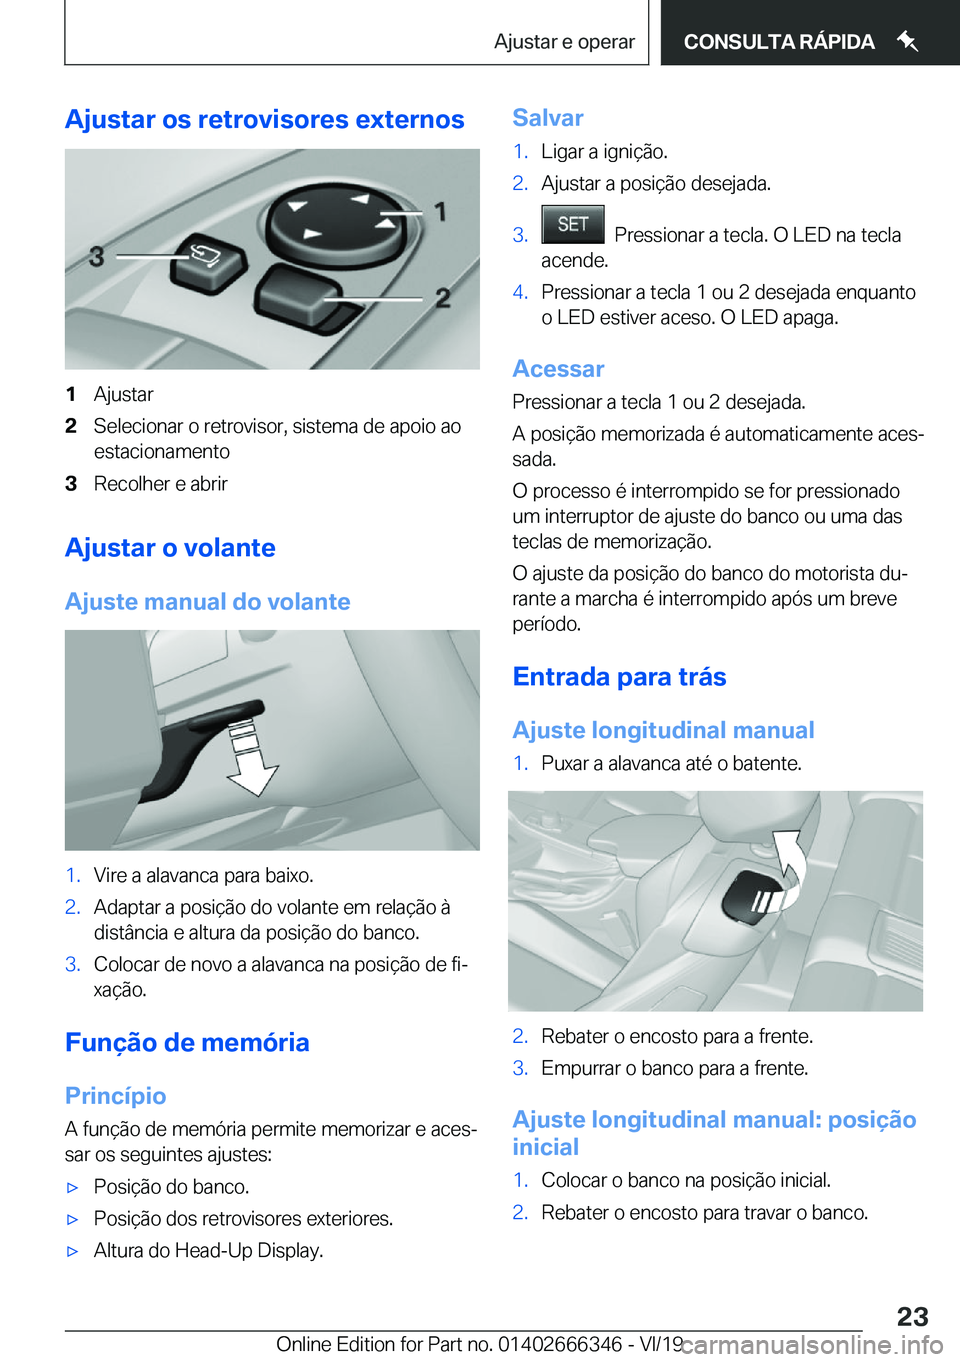 BMW 4 SERIES COUPE 2020  Manual do condutor (in Portuguese) �A�j�u�s�t�a�r��o�s��r�e�t�r�o�v�i�s�o�r�e�s��e�x�t�e�r�n�o�s�1�A�j�u�s�t�a�r�2�S�e�l�e�c�i�o�n�a�r��o��r�e�t�r�o�v�i�s�o�r�,��s�i�s�t�e�m�a��d�e��a�p�o�i�o��a�o�e�s�t�a�c�i�o�n�a�m�e�n�t�o�3